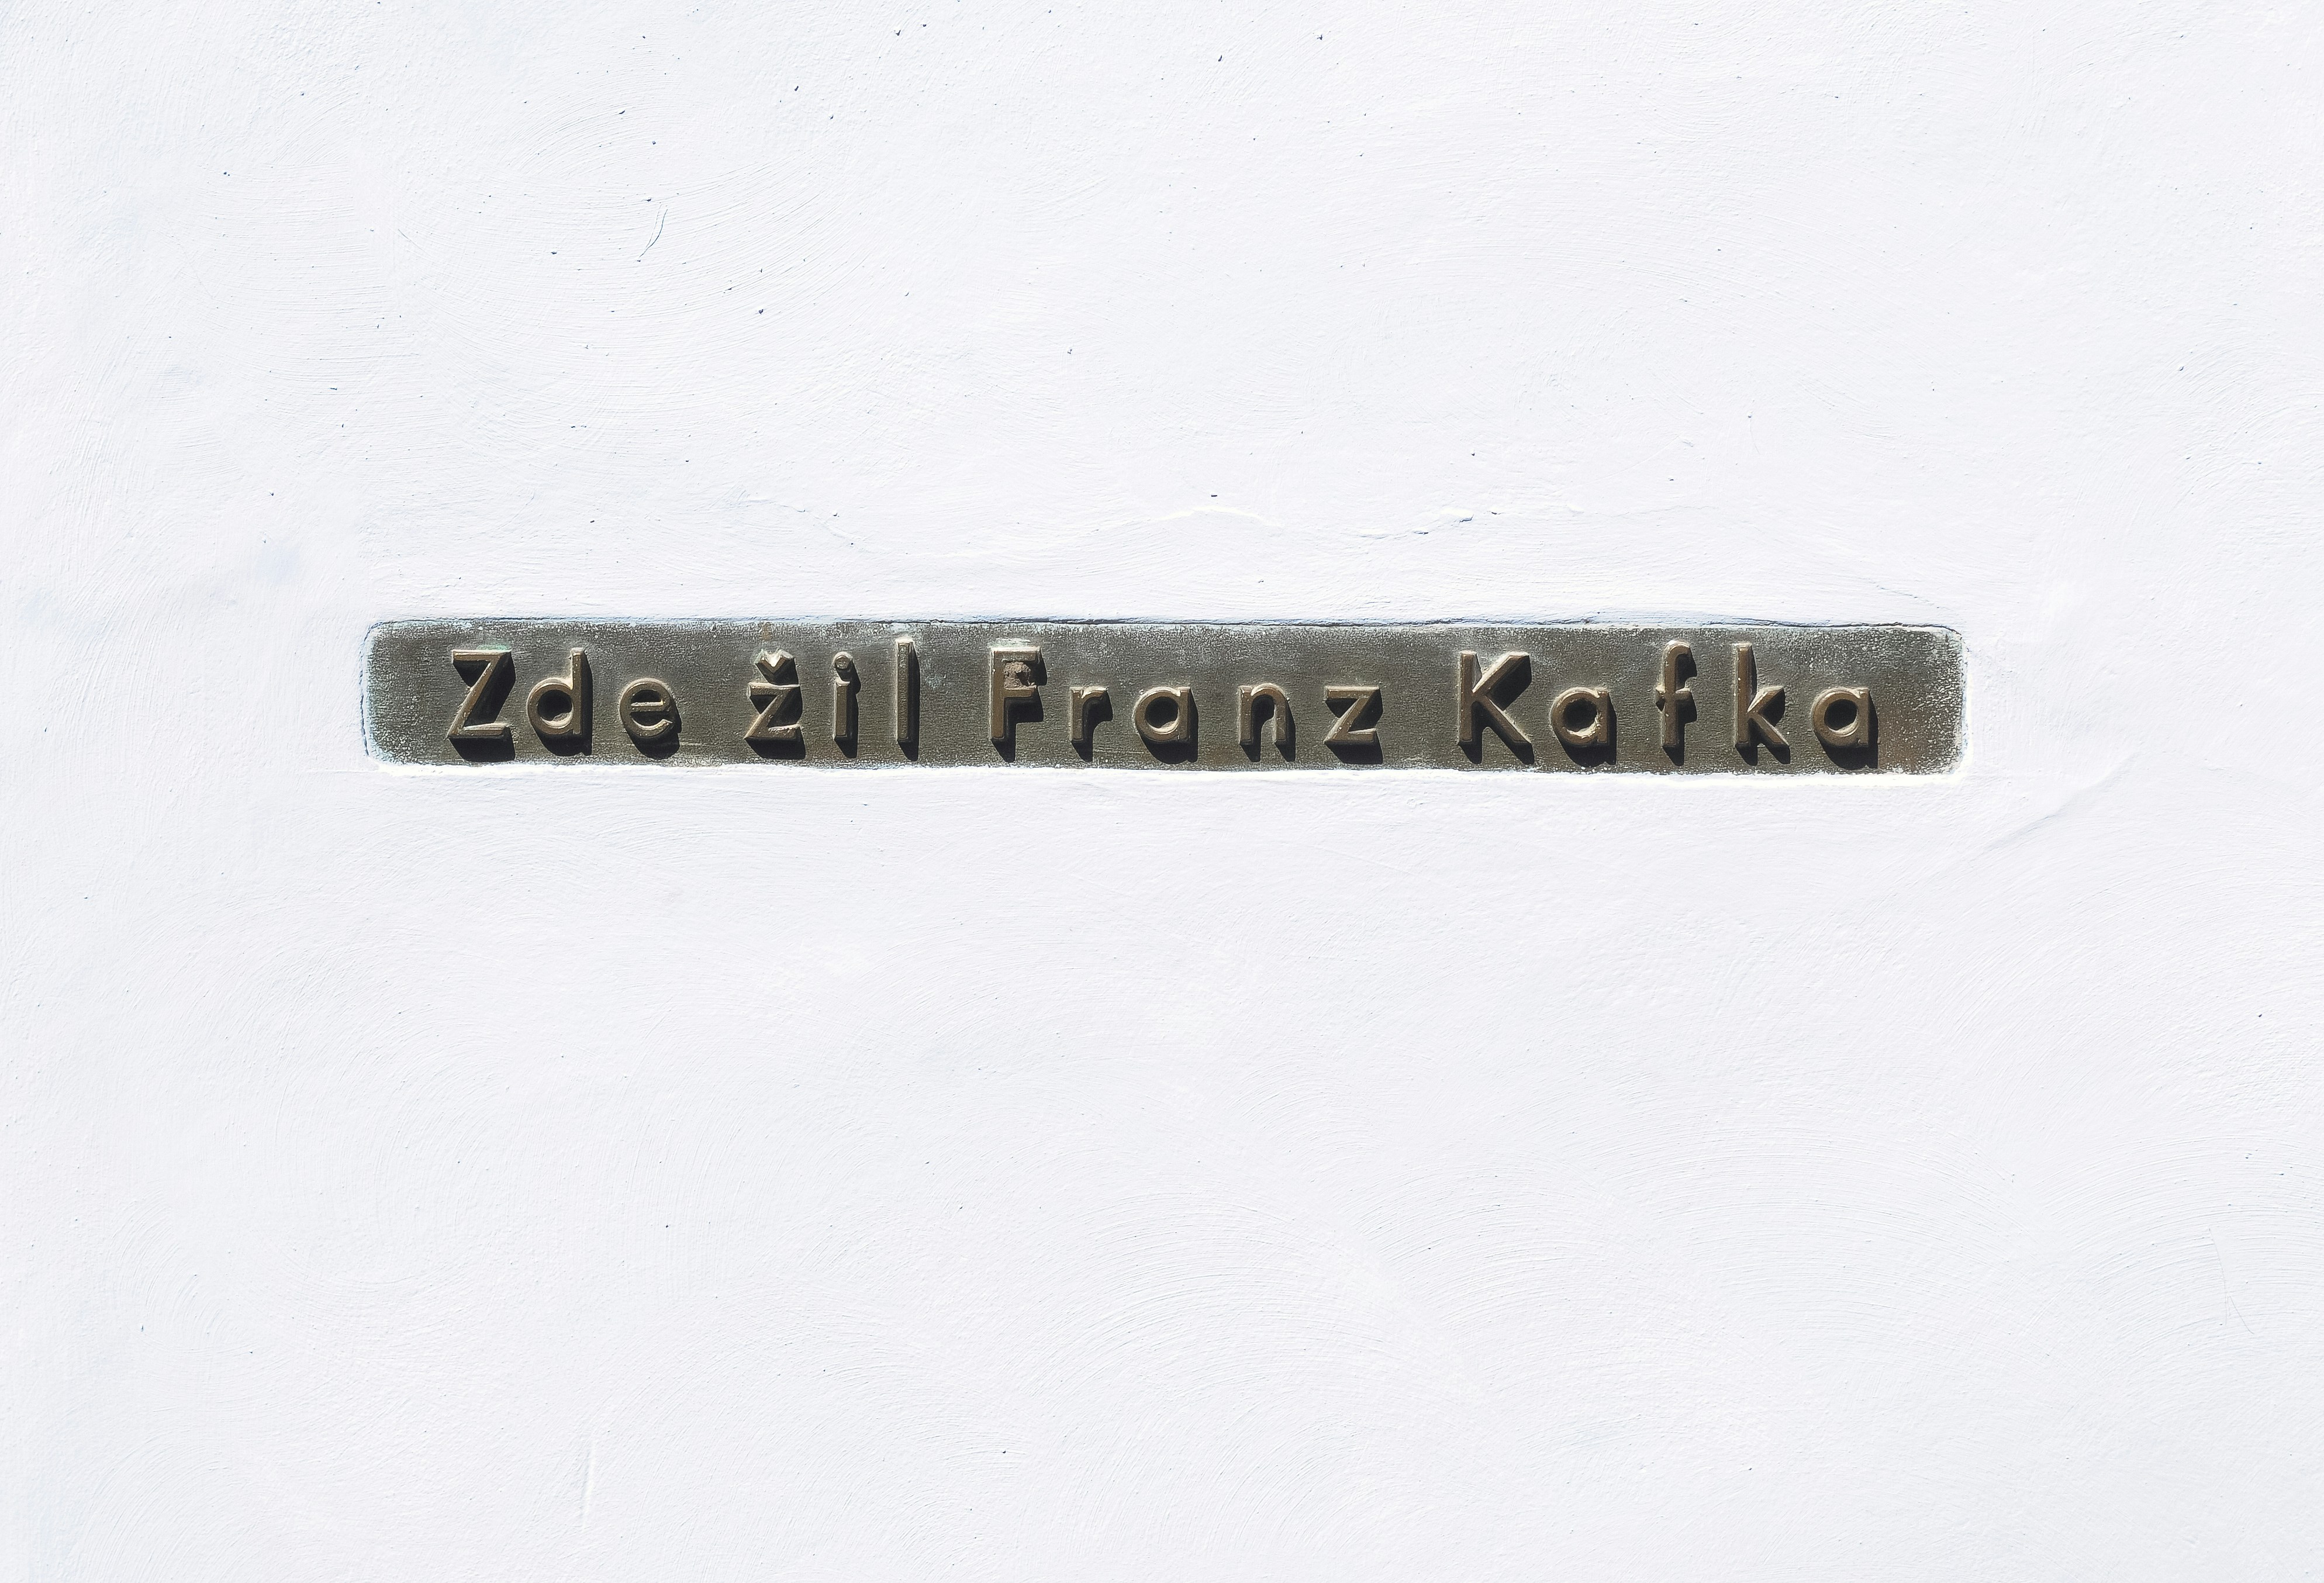 At Franz Kafka museum.